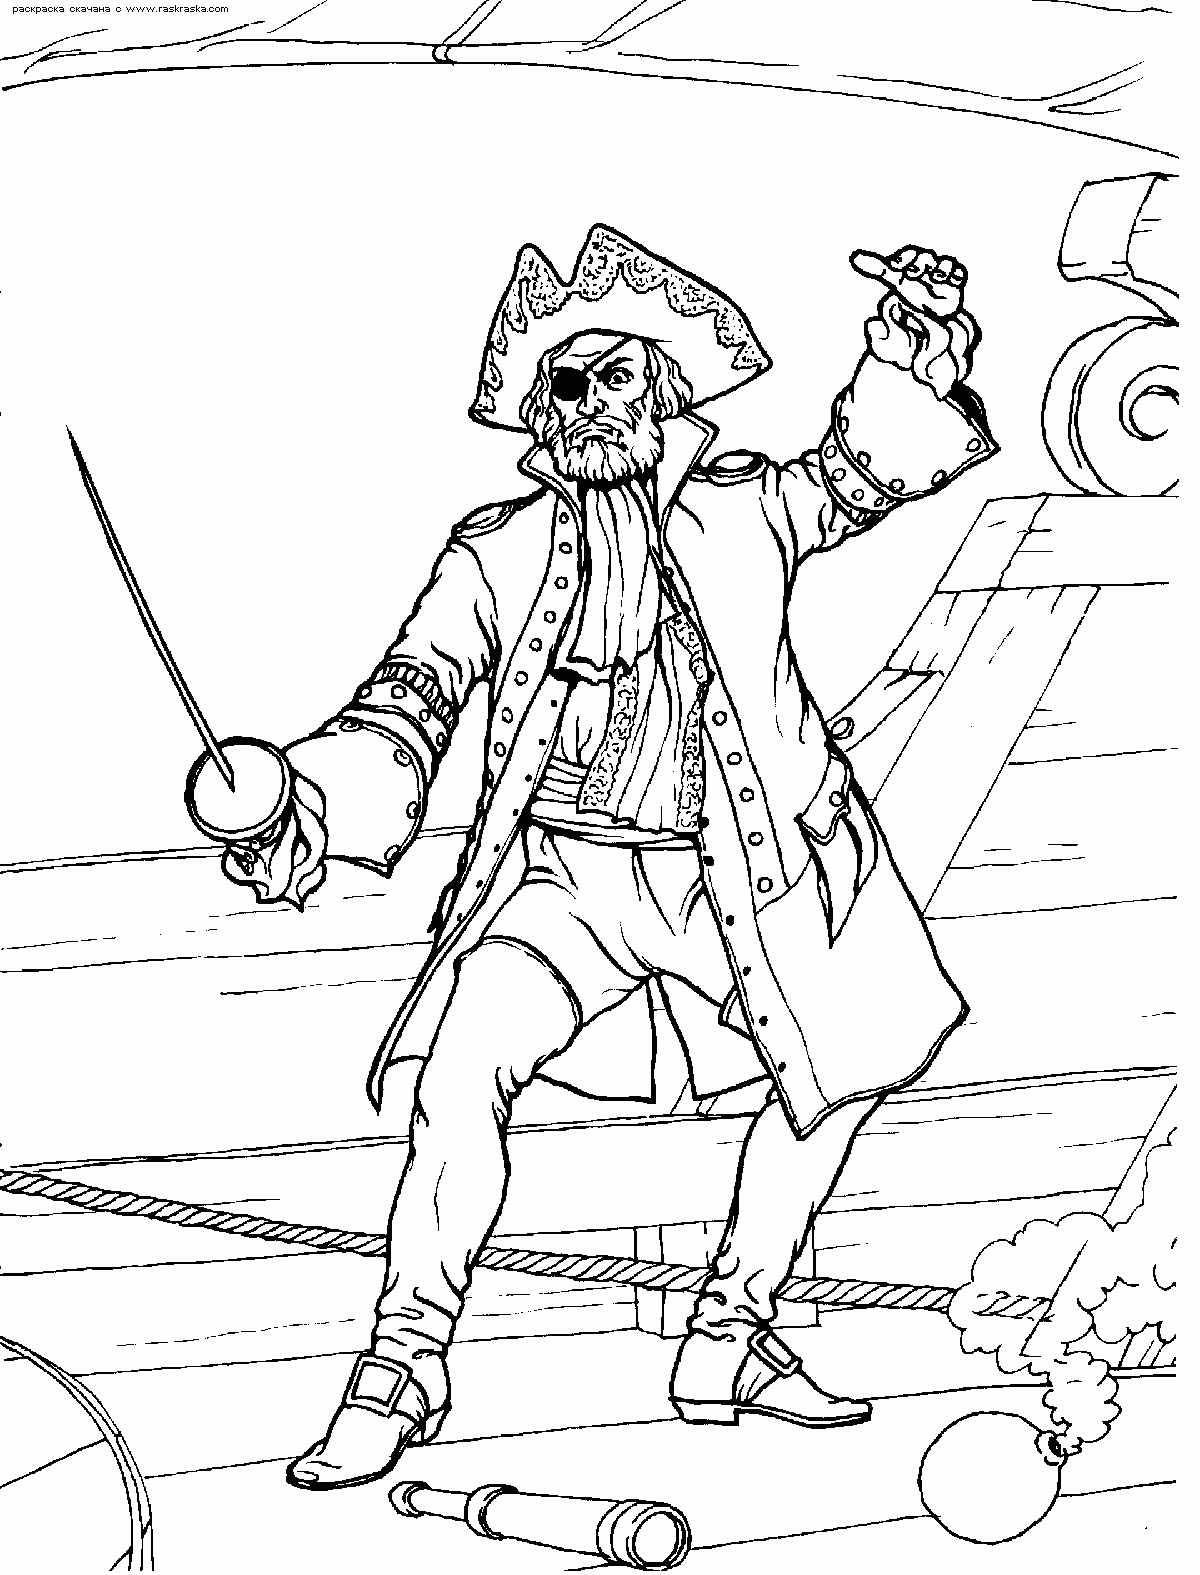 209 Dessins De Coloriage Pirate À Imprimer Sur Laguerche avec Pirates Des Caraibes Dessin